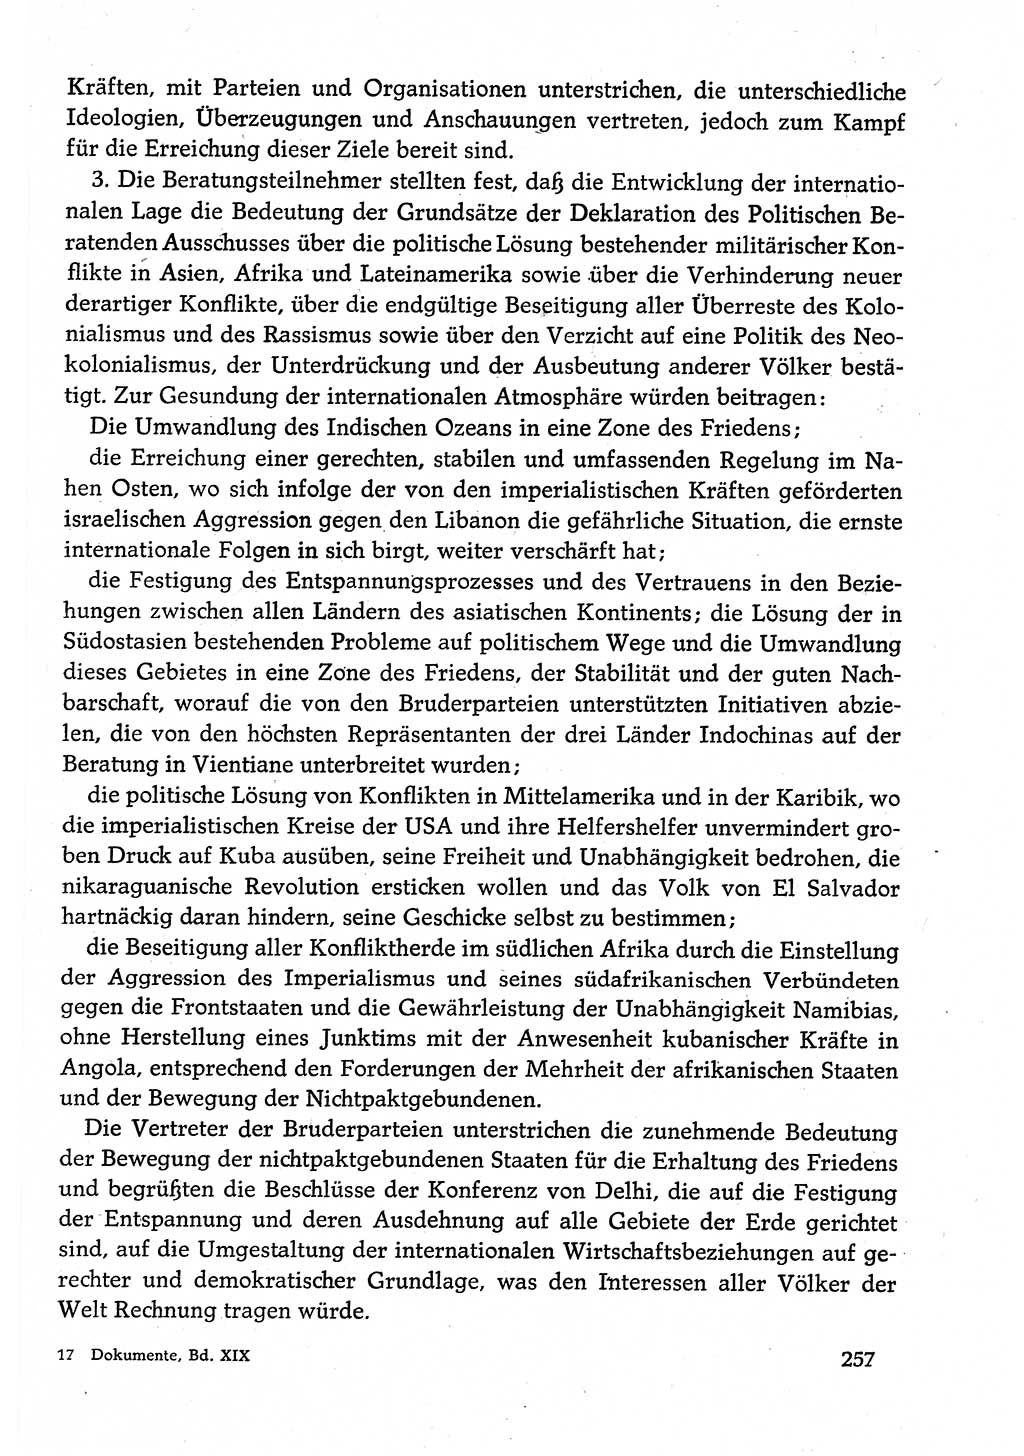 Dokumente der Sozialistischen Einheitspartei Deutschlands (SED) [Deutsche Demokratische Republik (DDR)] 1982-1983, Seite 257 (Dok. SED DDR 1982-1983, S. 257)